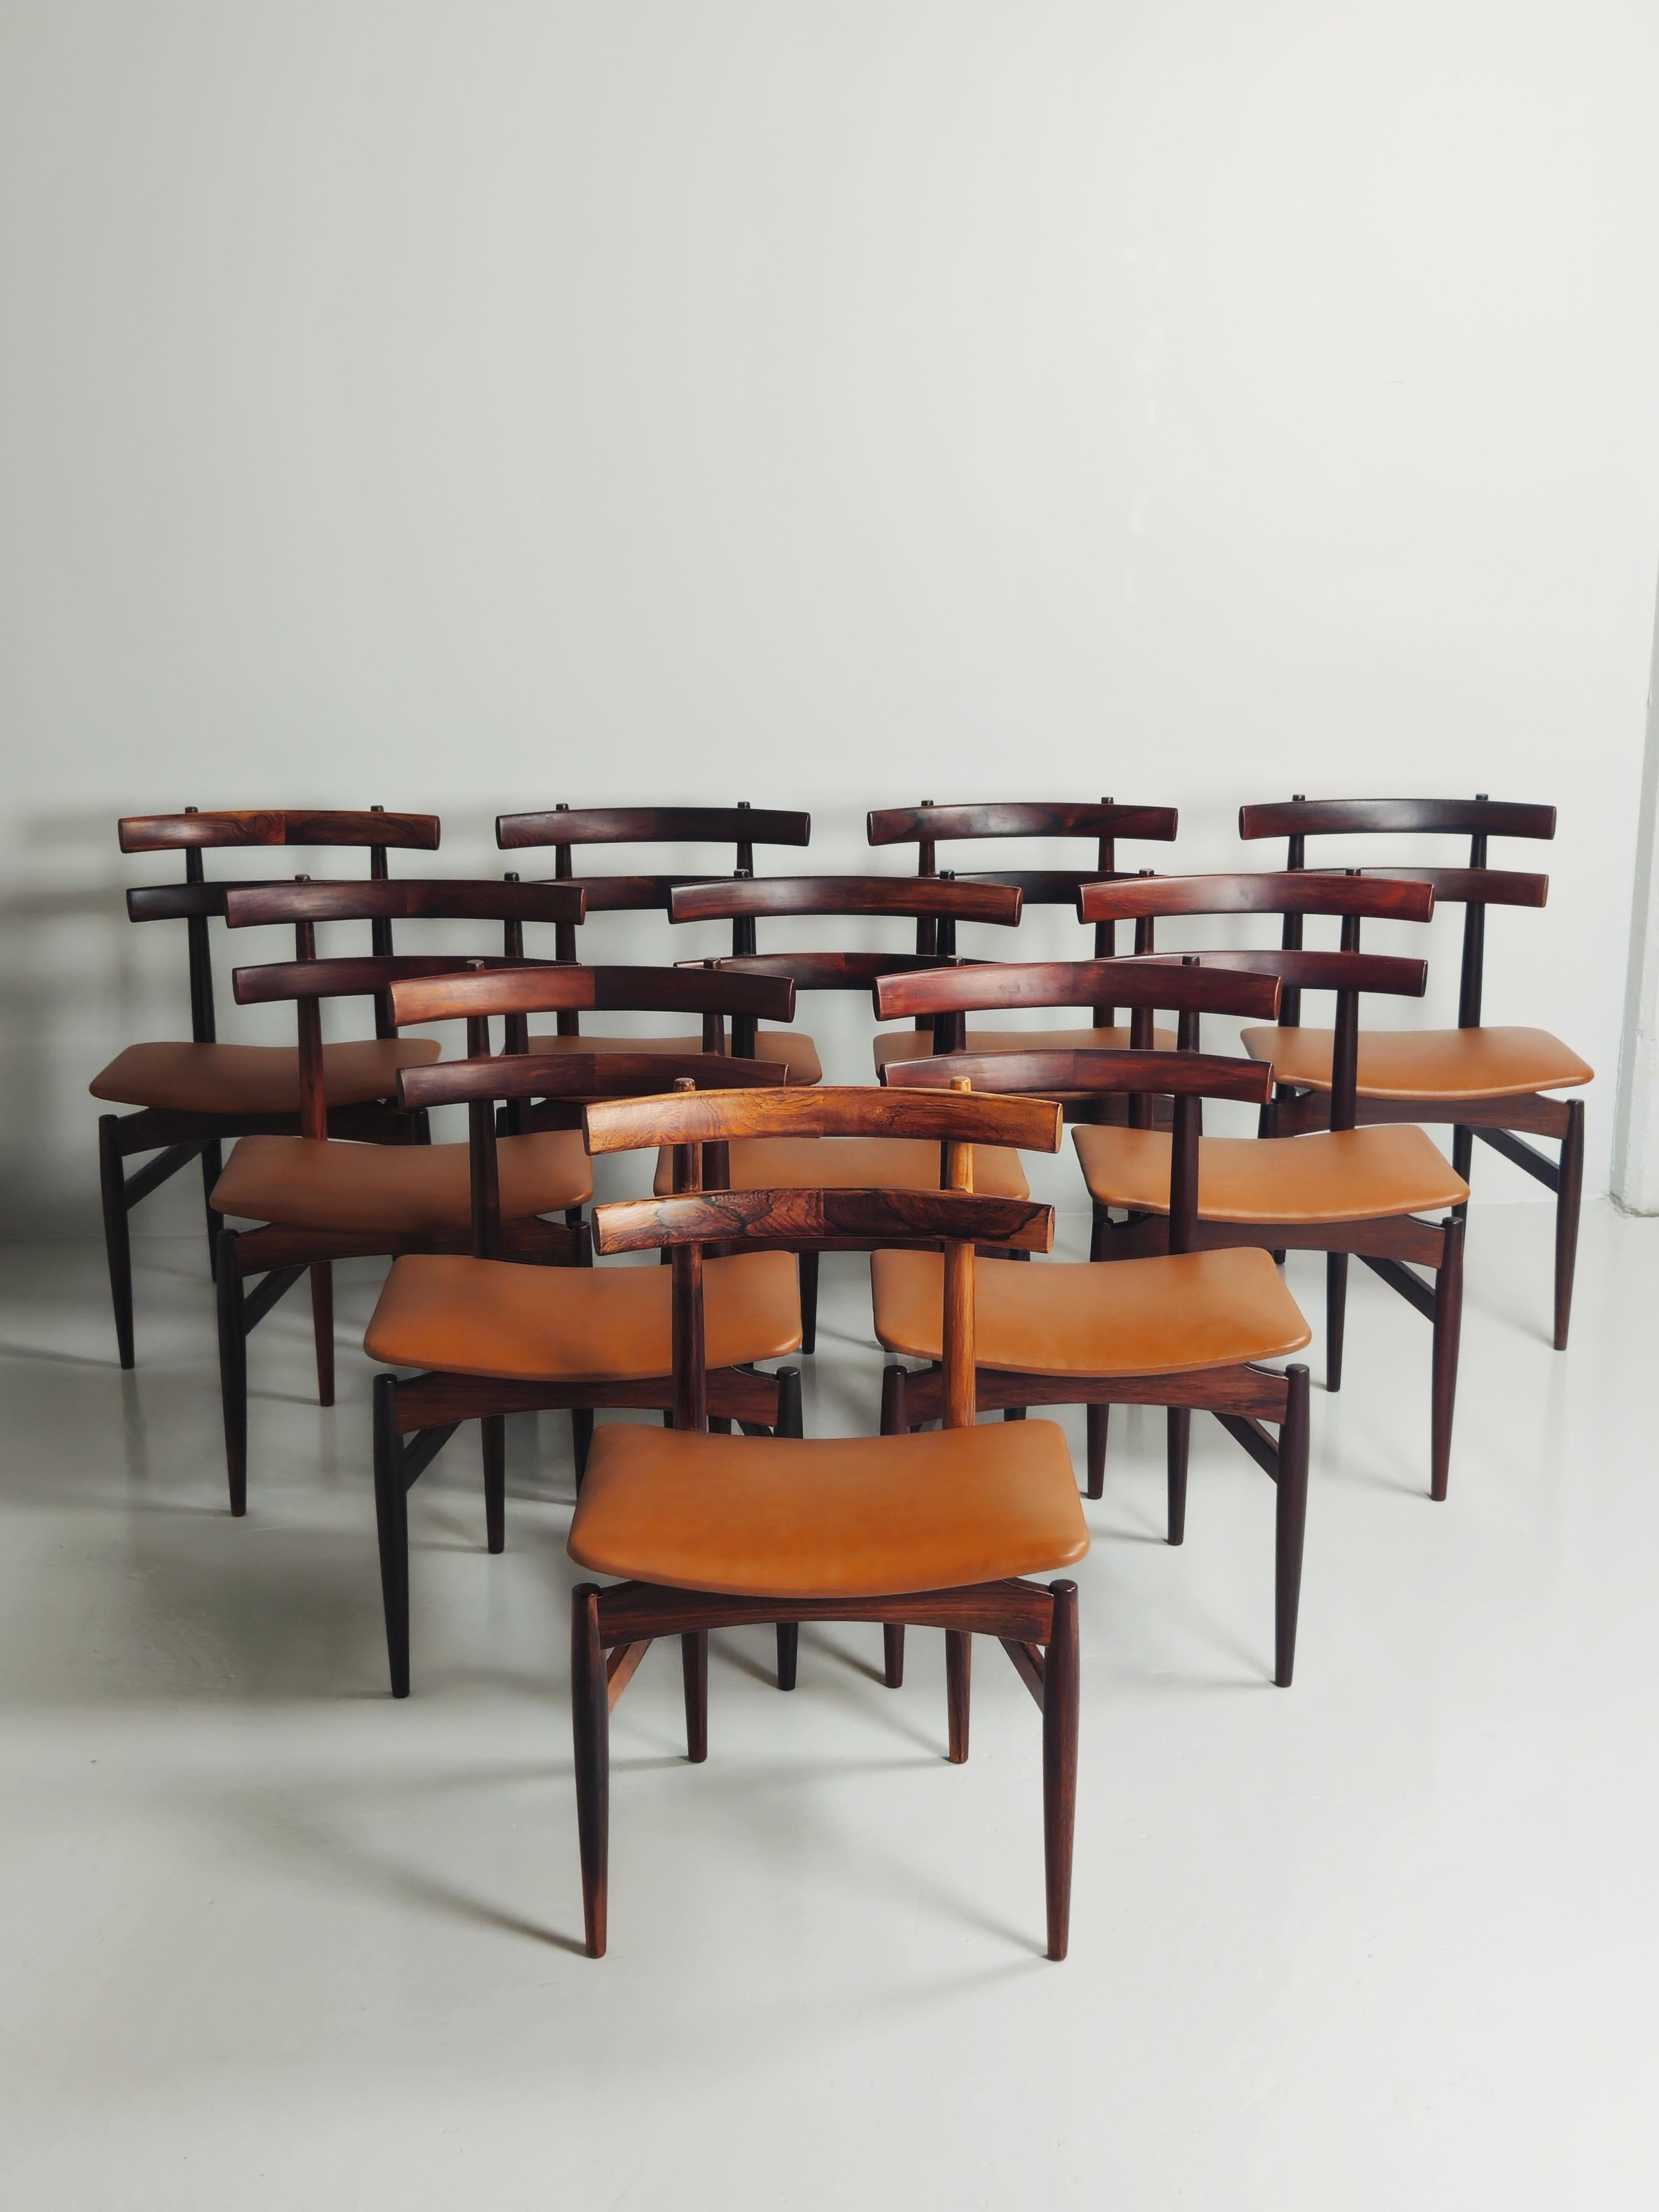 Sehr seltener Esszimmerstuhl, entworfen von Poul Hundevad in Dänemark in den 1950er Jahren. 

Hergestellt aus Palisanderholz und mit hochwertigem cognacfarbenem Leder gepolsterten Sitzen.

Elf Stühle sind verfügbar. 